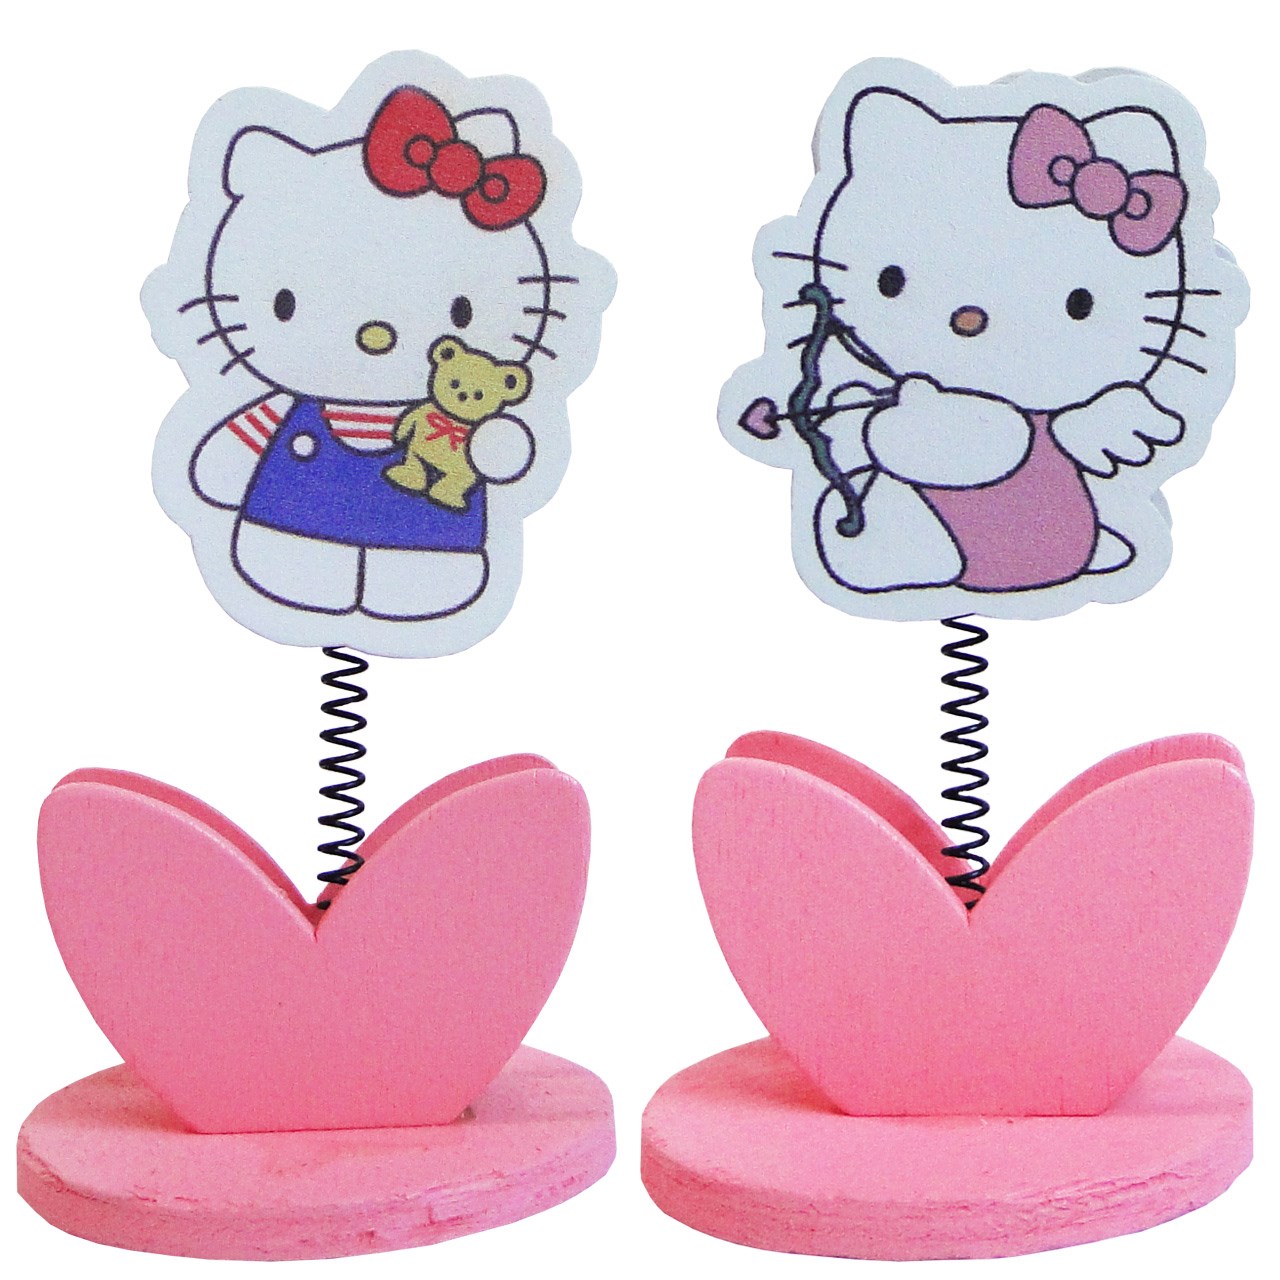 پایه نگهدارنده عکس مدل Hello Kitty بسته 2 عددی به همراه 2 عدد قلب چوبی 